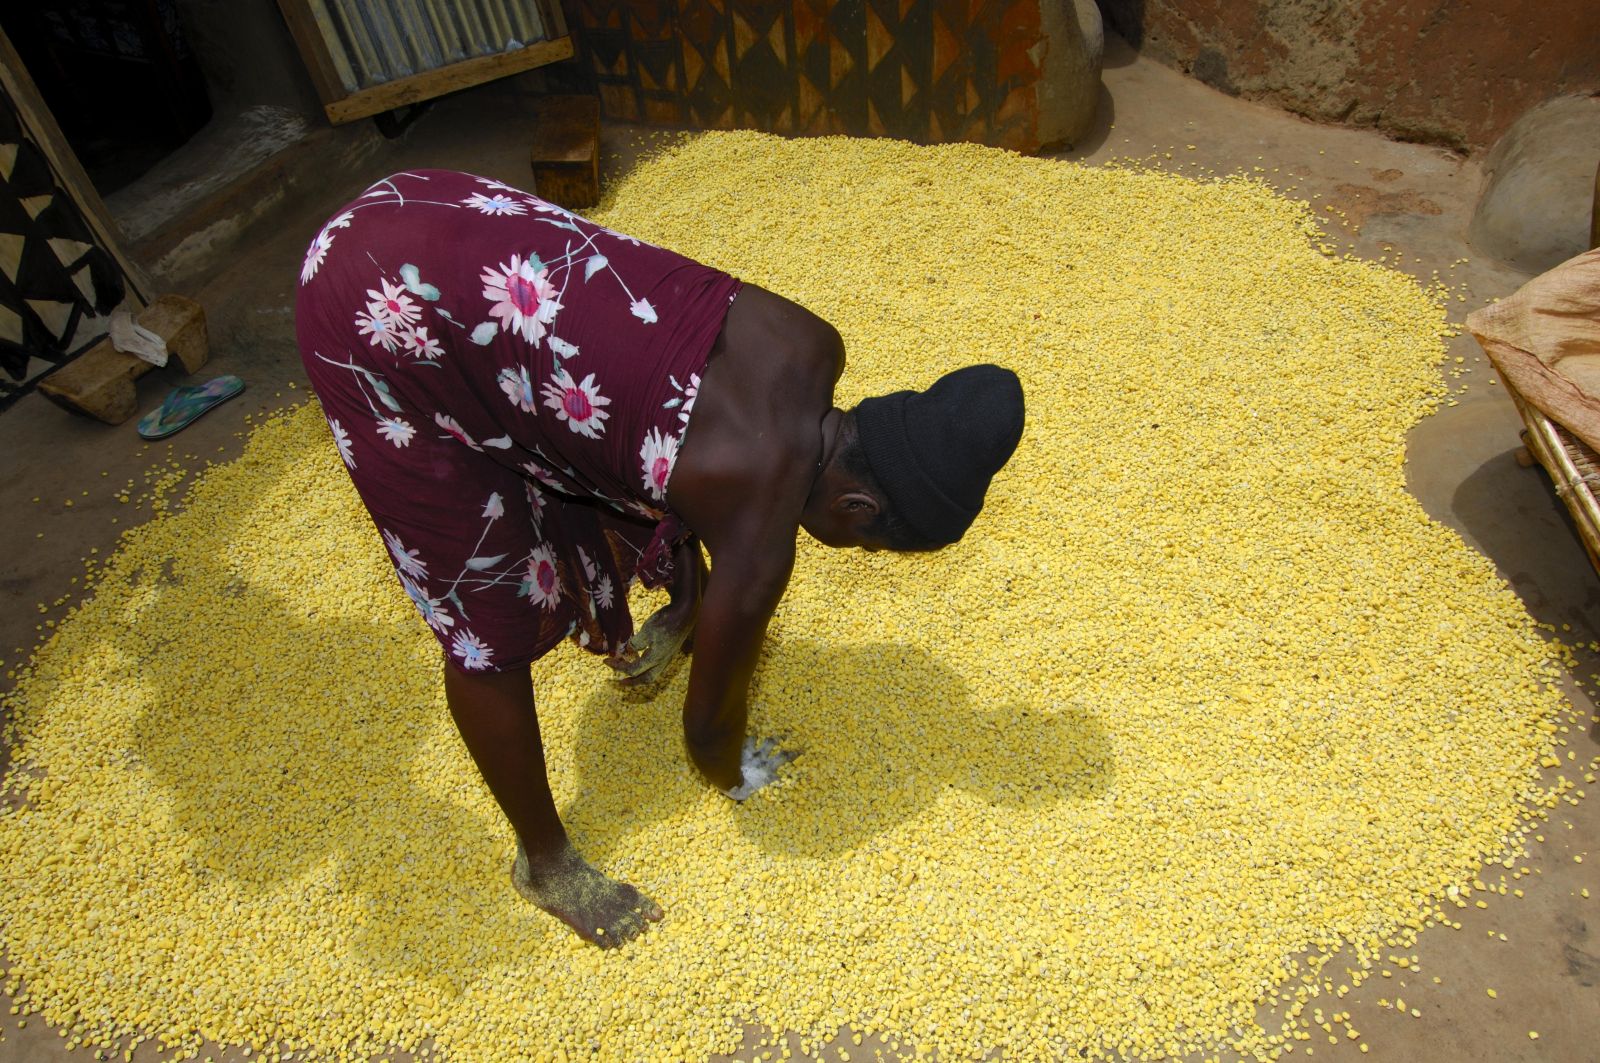 Eine Frau bereitet Samen des Néré-Baums zum Trocknen auf dem Boden aus. Der Néré ist ein bedeutender Nutzbaum in Burkina Faso.